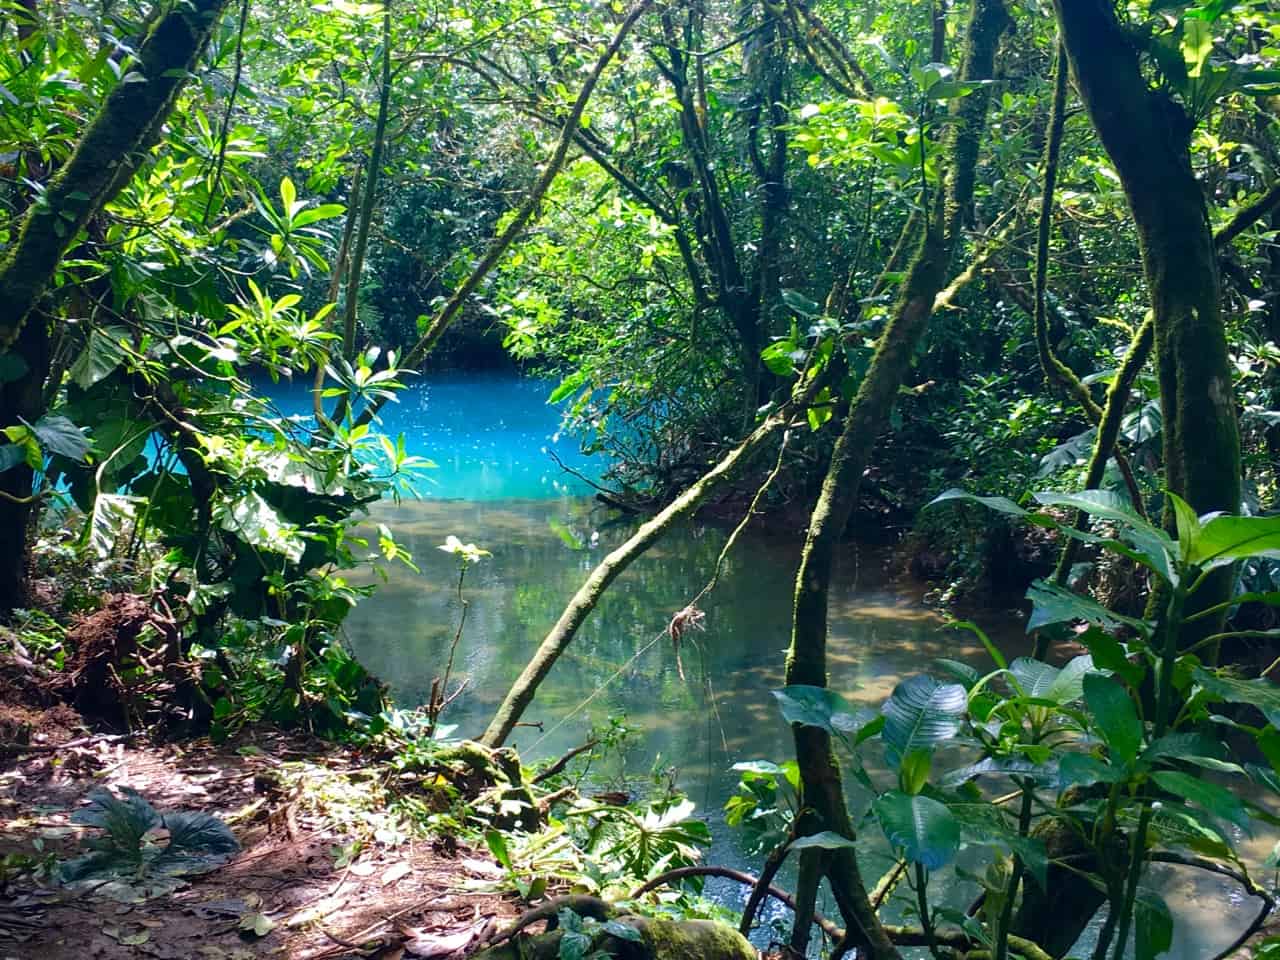 Los te Centicidores în Costa Rica, unde se întâlnesc două râuri de apă limpede și unul devine albastru.